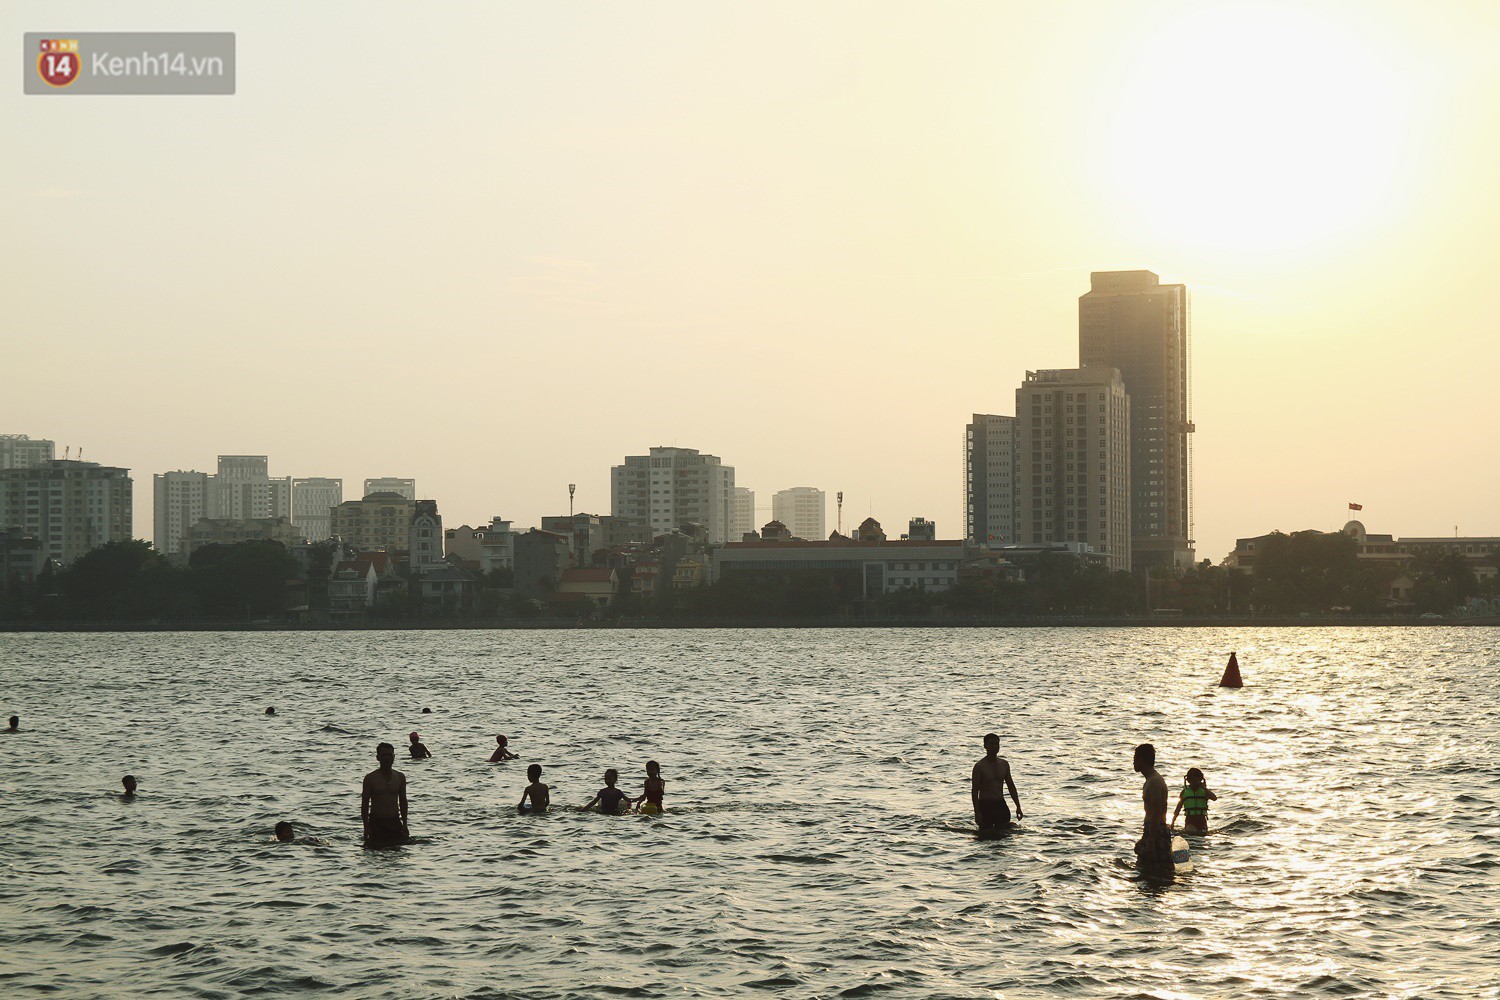 Nắng nóng oi bức, người dân Thủ đô bế chó cưng ra Hồ Tây cùng tắm để giải nhiệt dù có biển cấm - Ảnh 1.